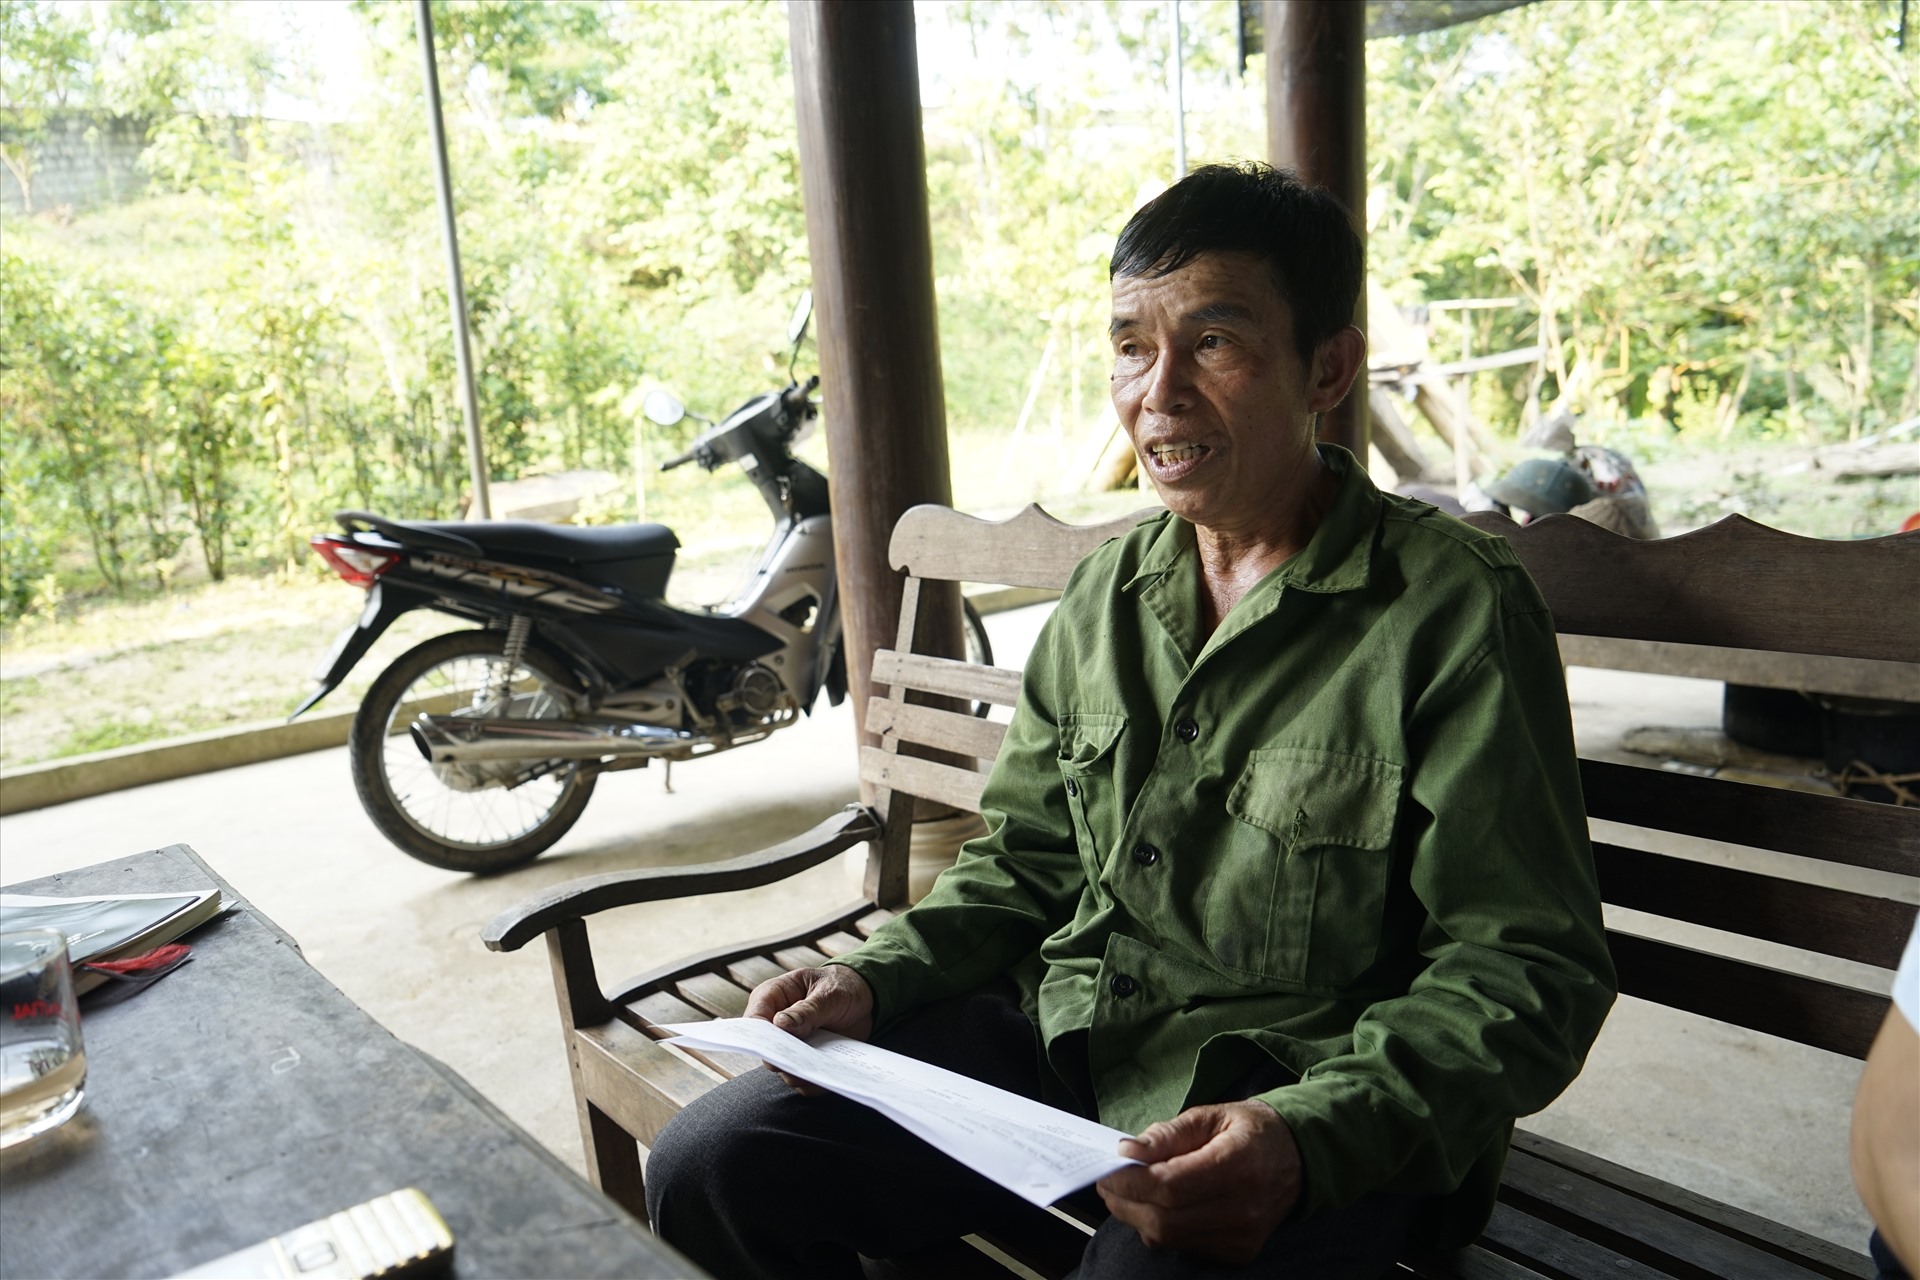 Nhường đất cho dự án thủy điện đã 8 năm, hộ ông Lang Văn Thái (xã Đồng Văn, huyện Quế Phong) vẫn chưa được nhận tiền đối trừ đất nông nghiệp. Ảnh: Q.Đại